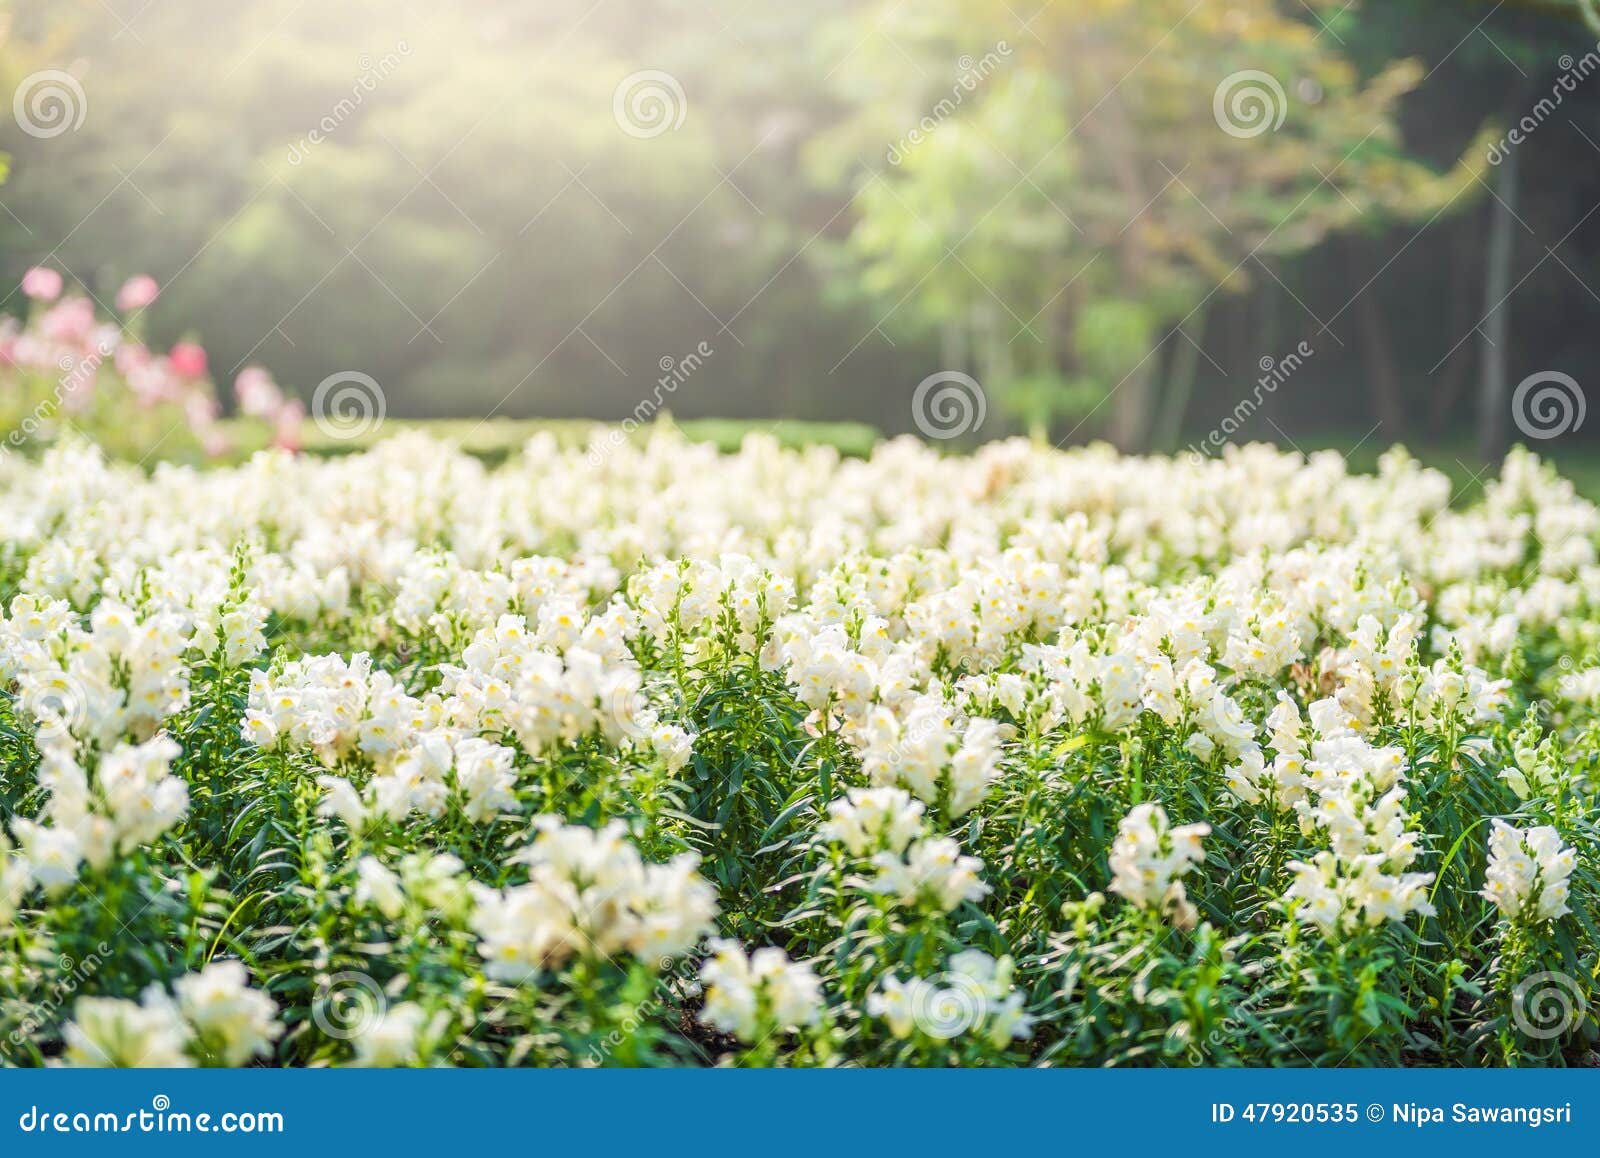 Jardin de fleurs blanches image stock. Image du normal - 47920535